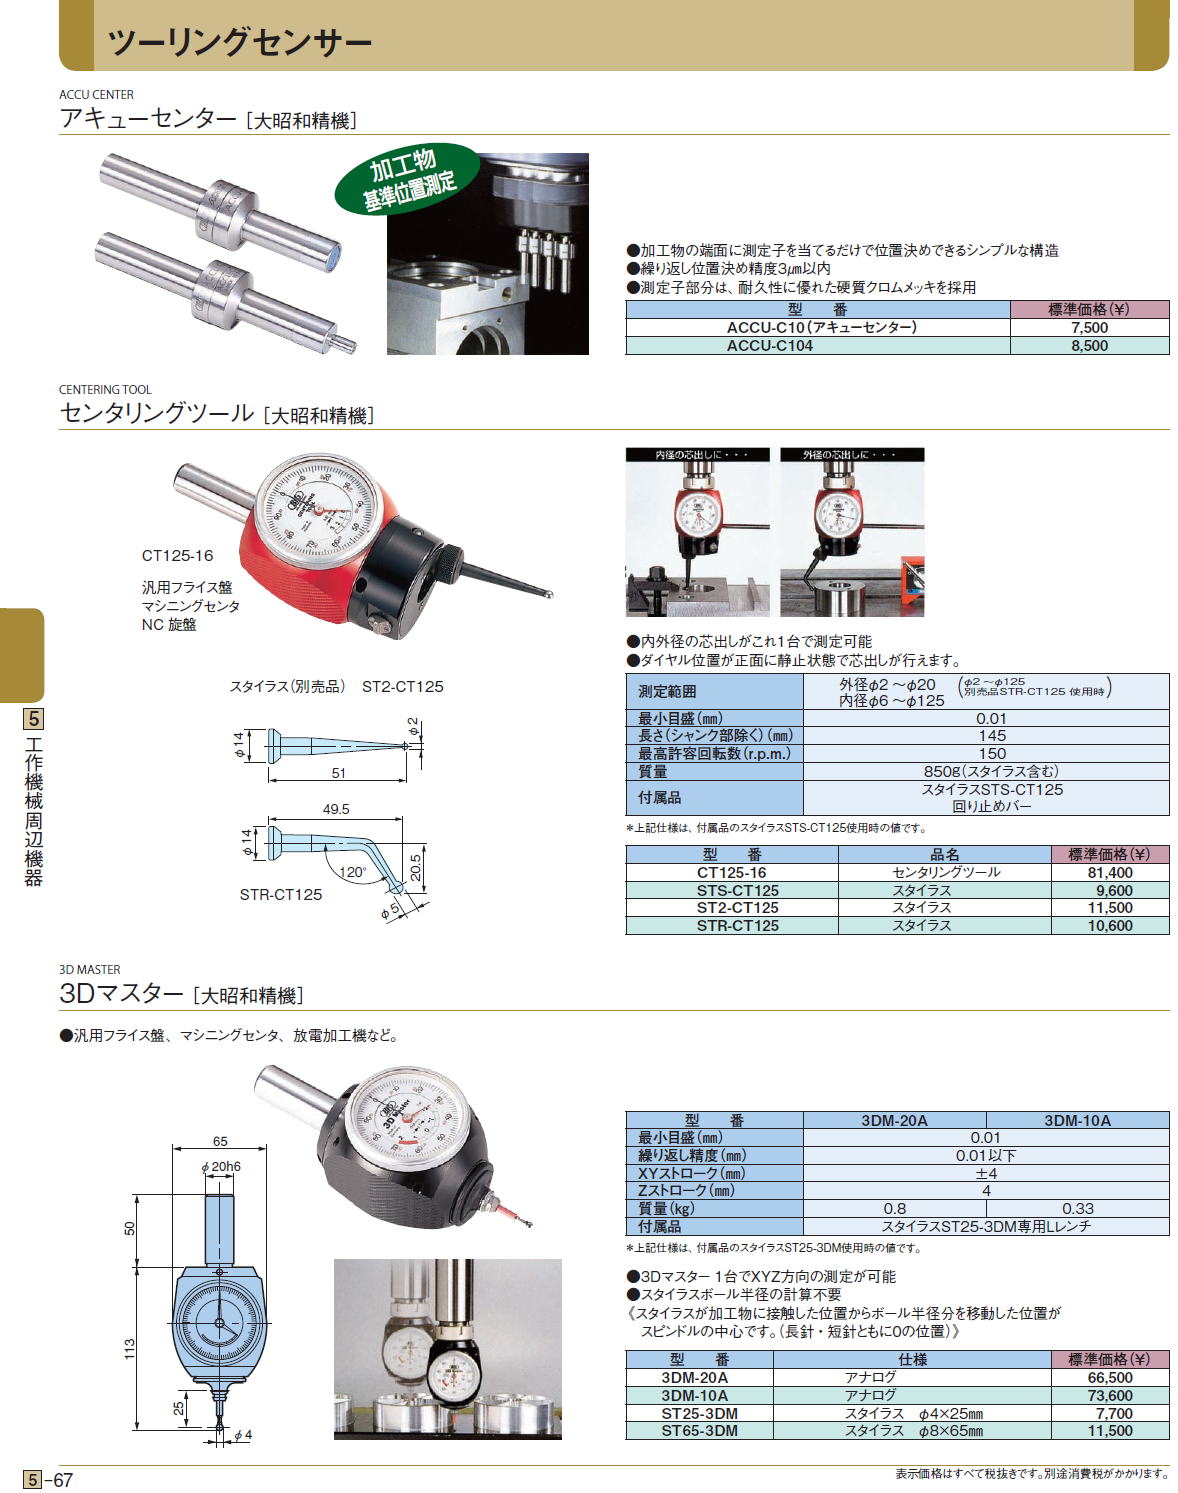 大昭和精機:パーフェクトシール PSC20-14 工具 部品 :icn-kic-20800